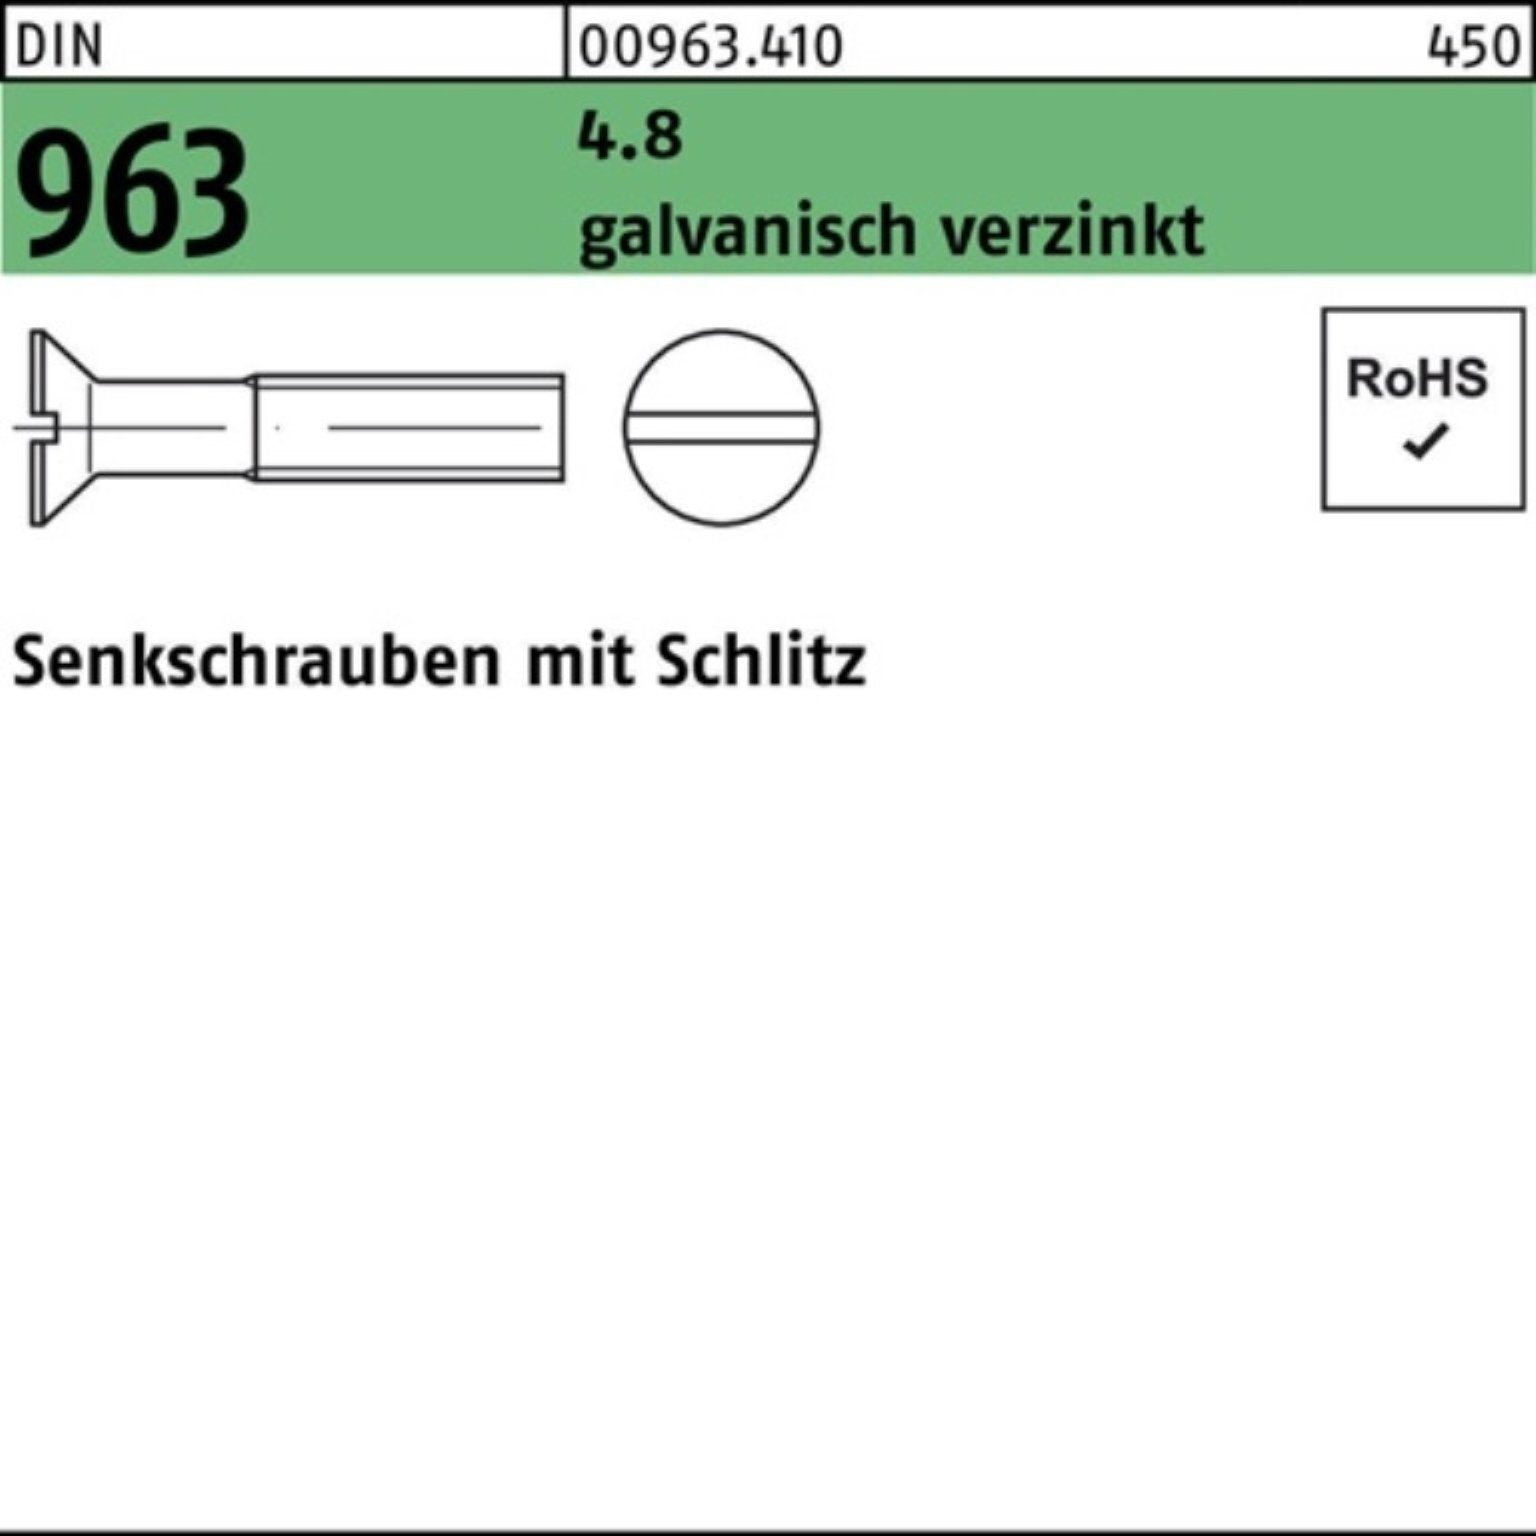 M5x Schlitz 1000er Senkschraube St 30 Senkschraube Reyher 963 galv.verz. DIN 4.8 Pack 1000